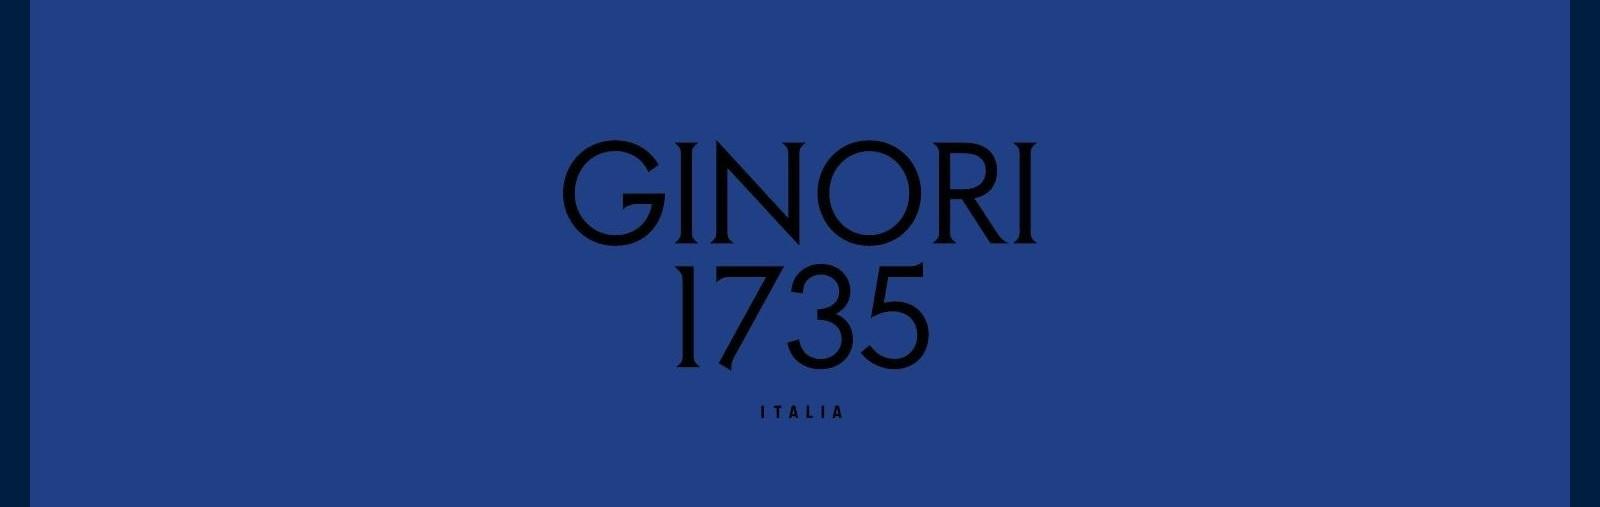 Ginori 1735 slide